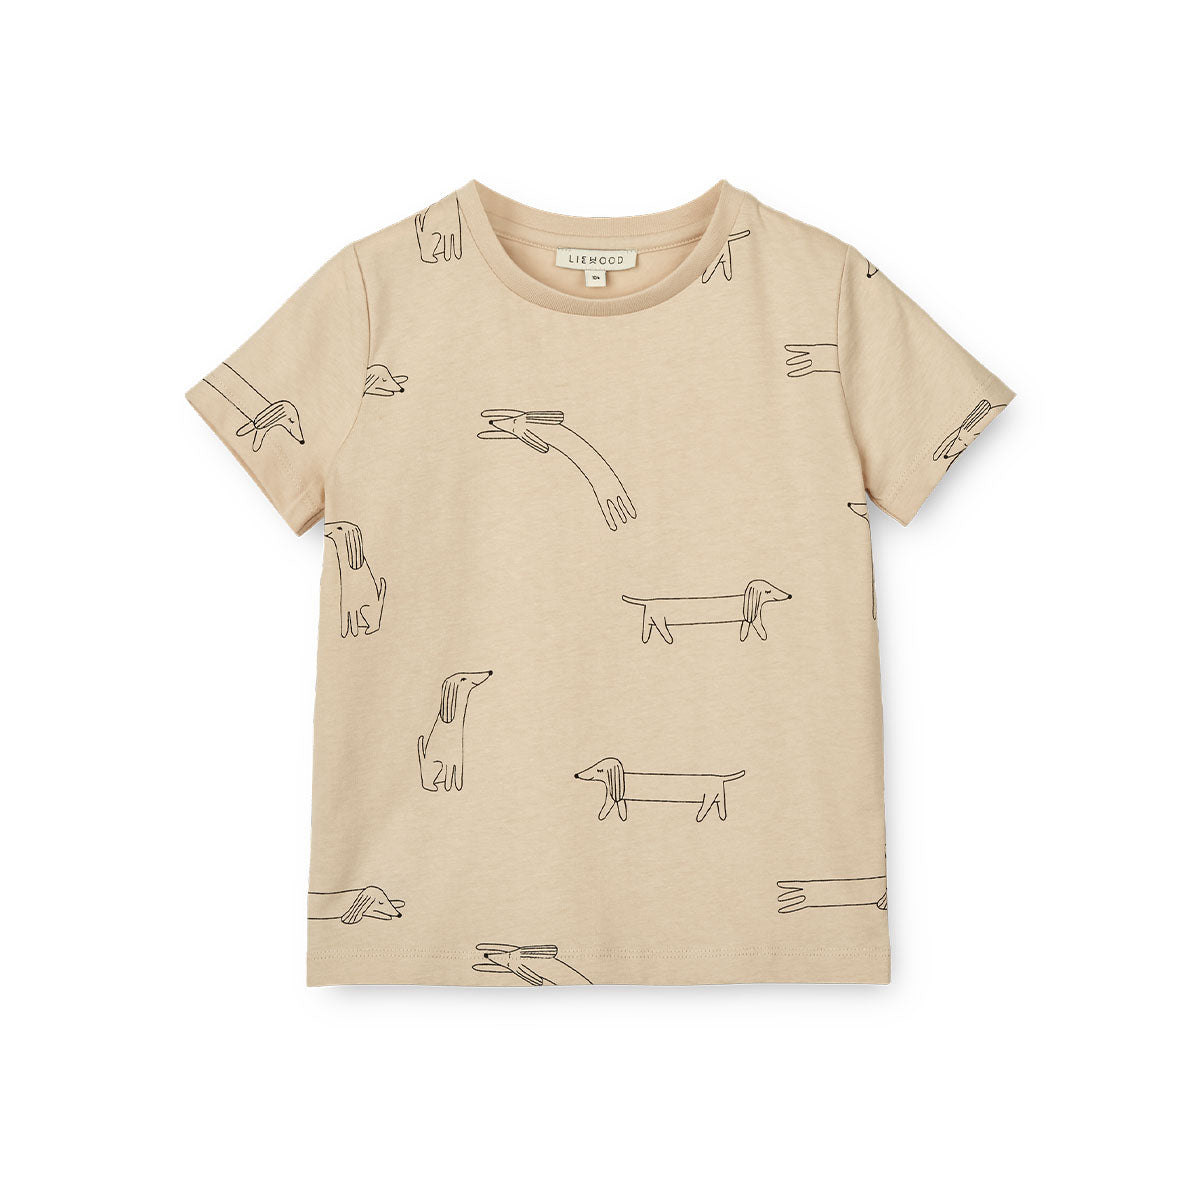 Verrijk de garderobe van je baby met dit schattige apia baby T-shirt in de kleur dog/sandy van het merk Liewood. Dit stijlvolle shirtje ziet er niet alleen geweldig uit, maar zit ook heel erg comfortabel! VanZus